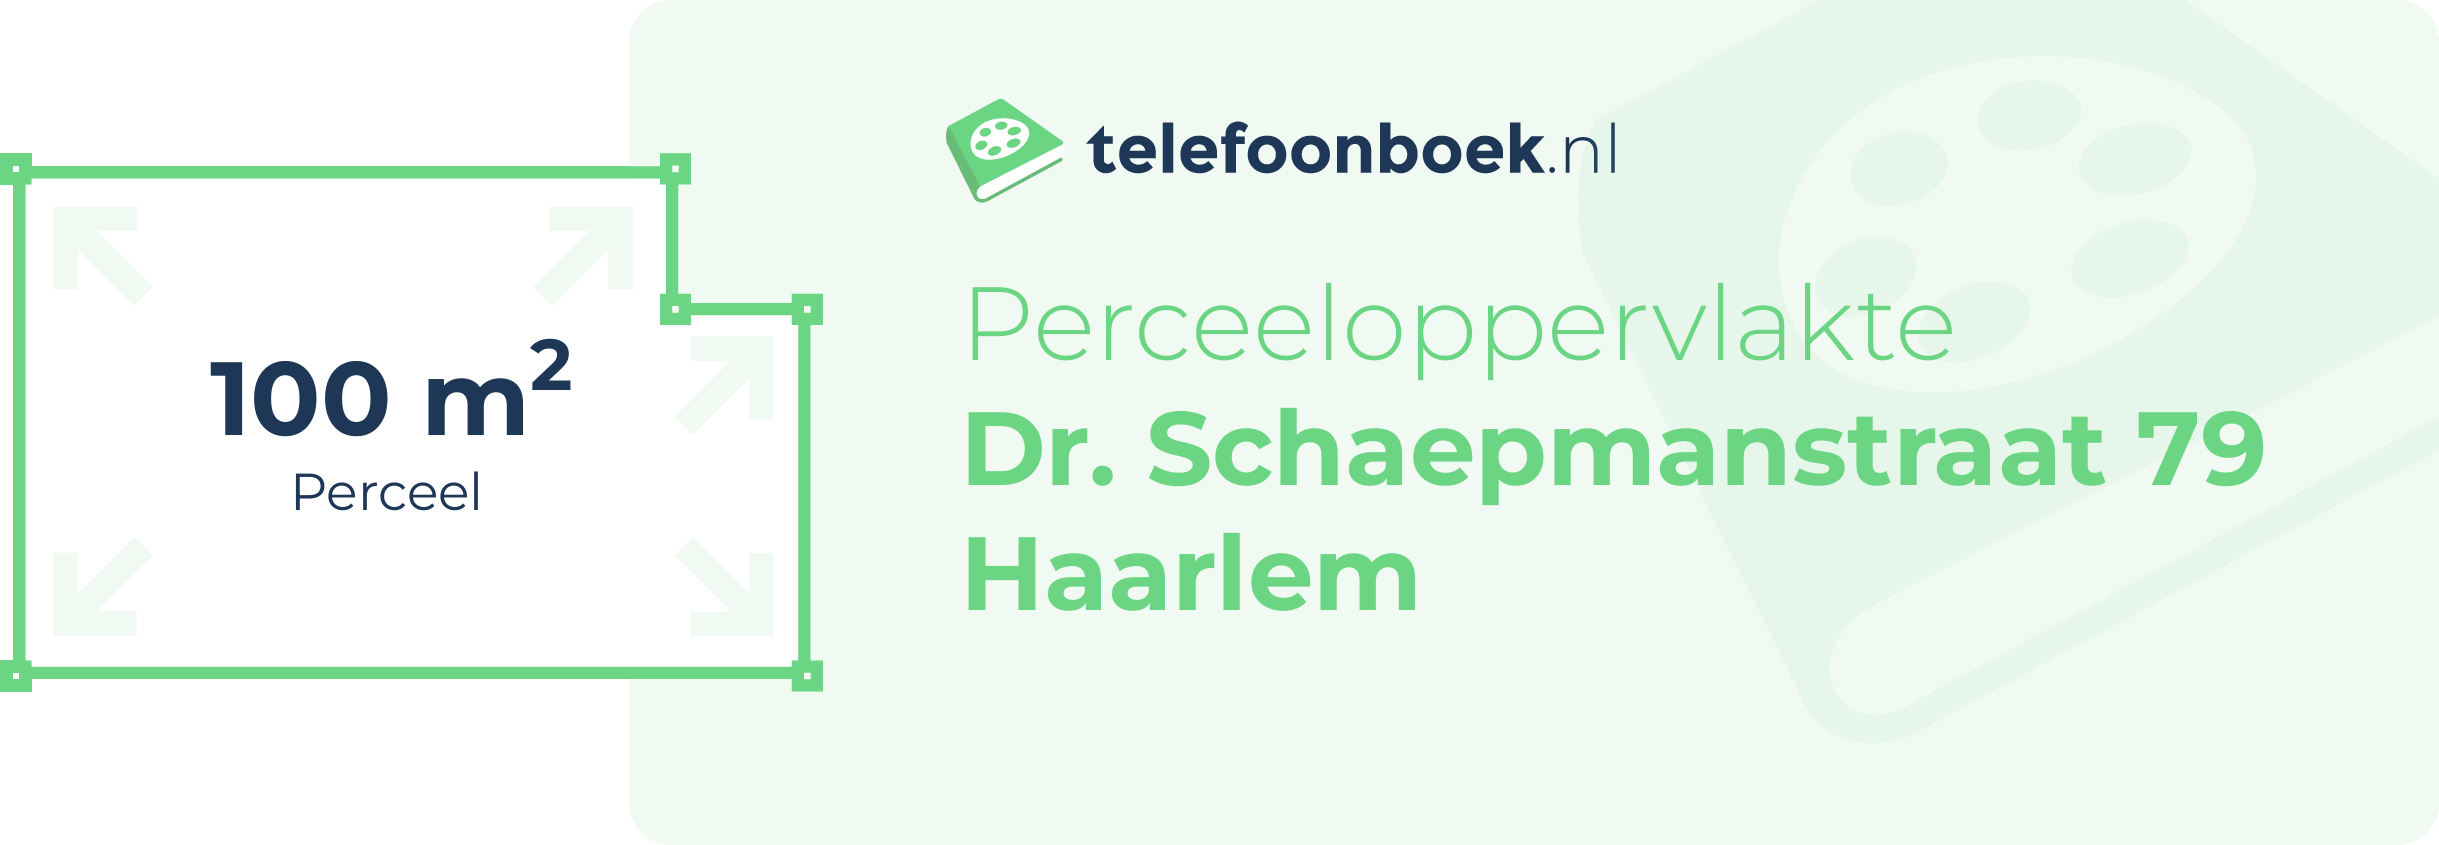 Perceeloppervlakte Dr. Schaepmanstraat 79 Haarlem